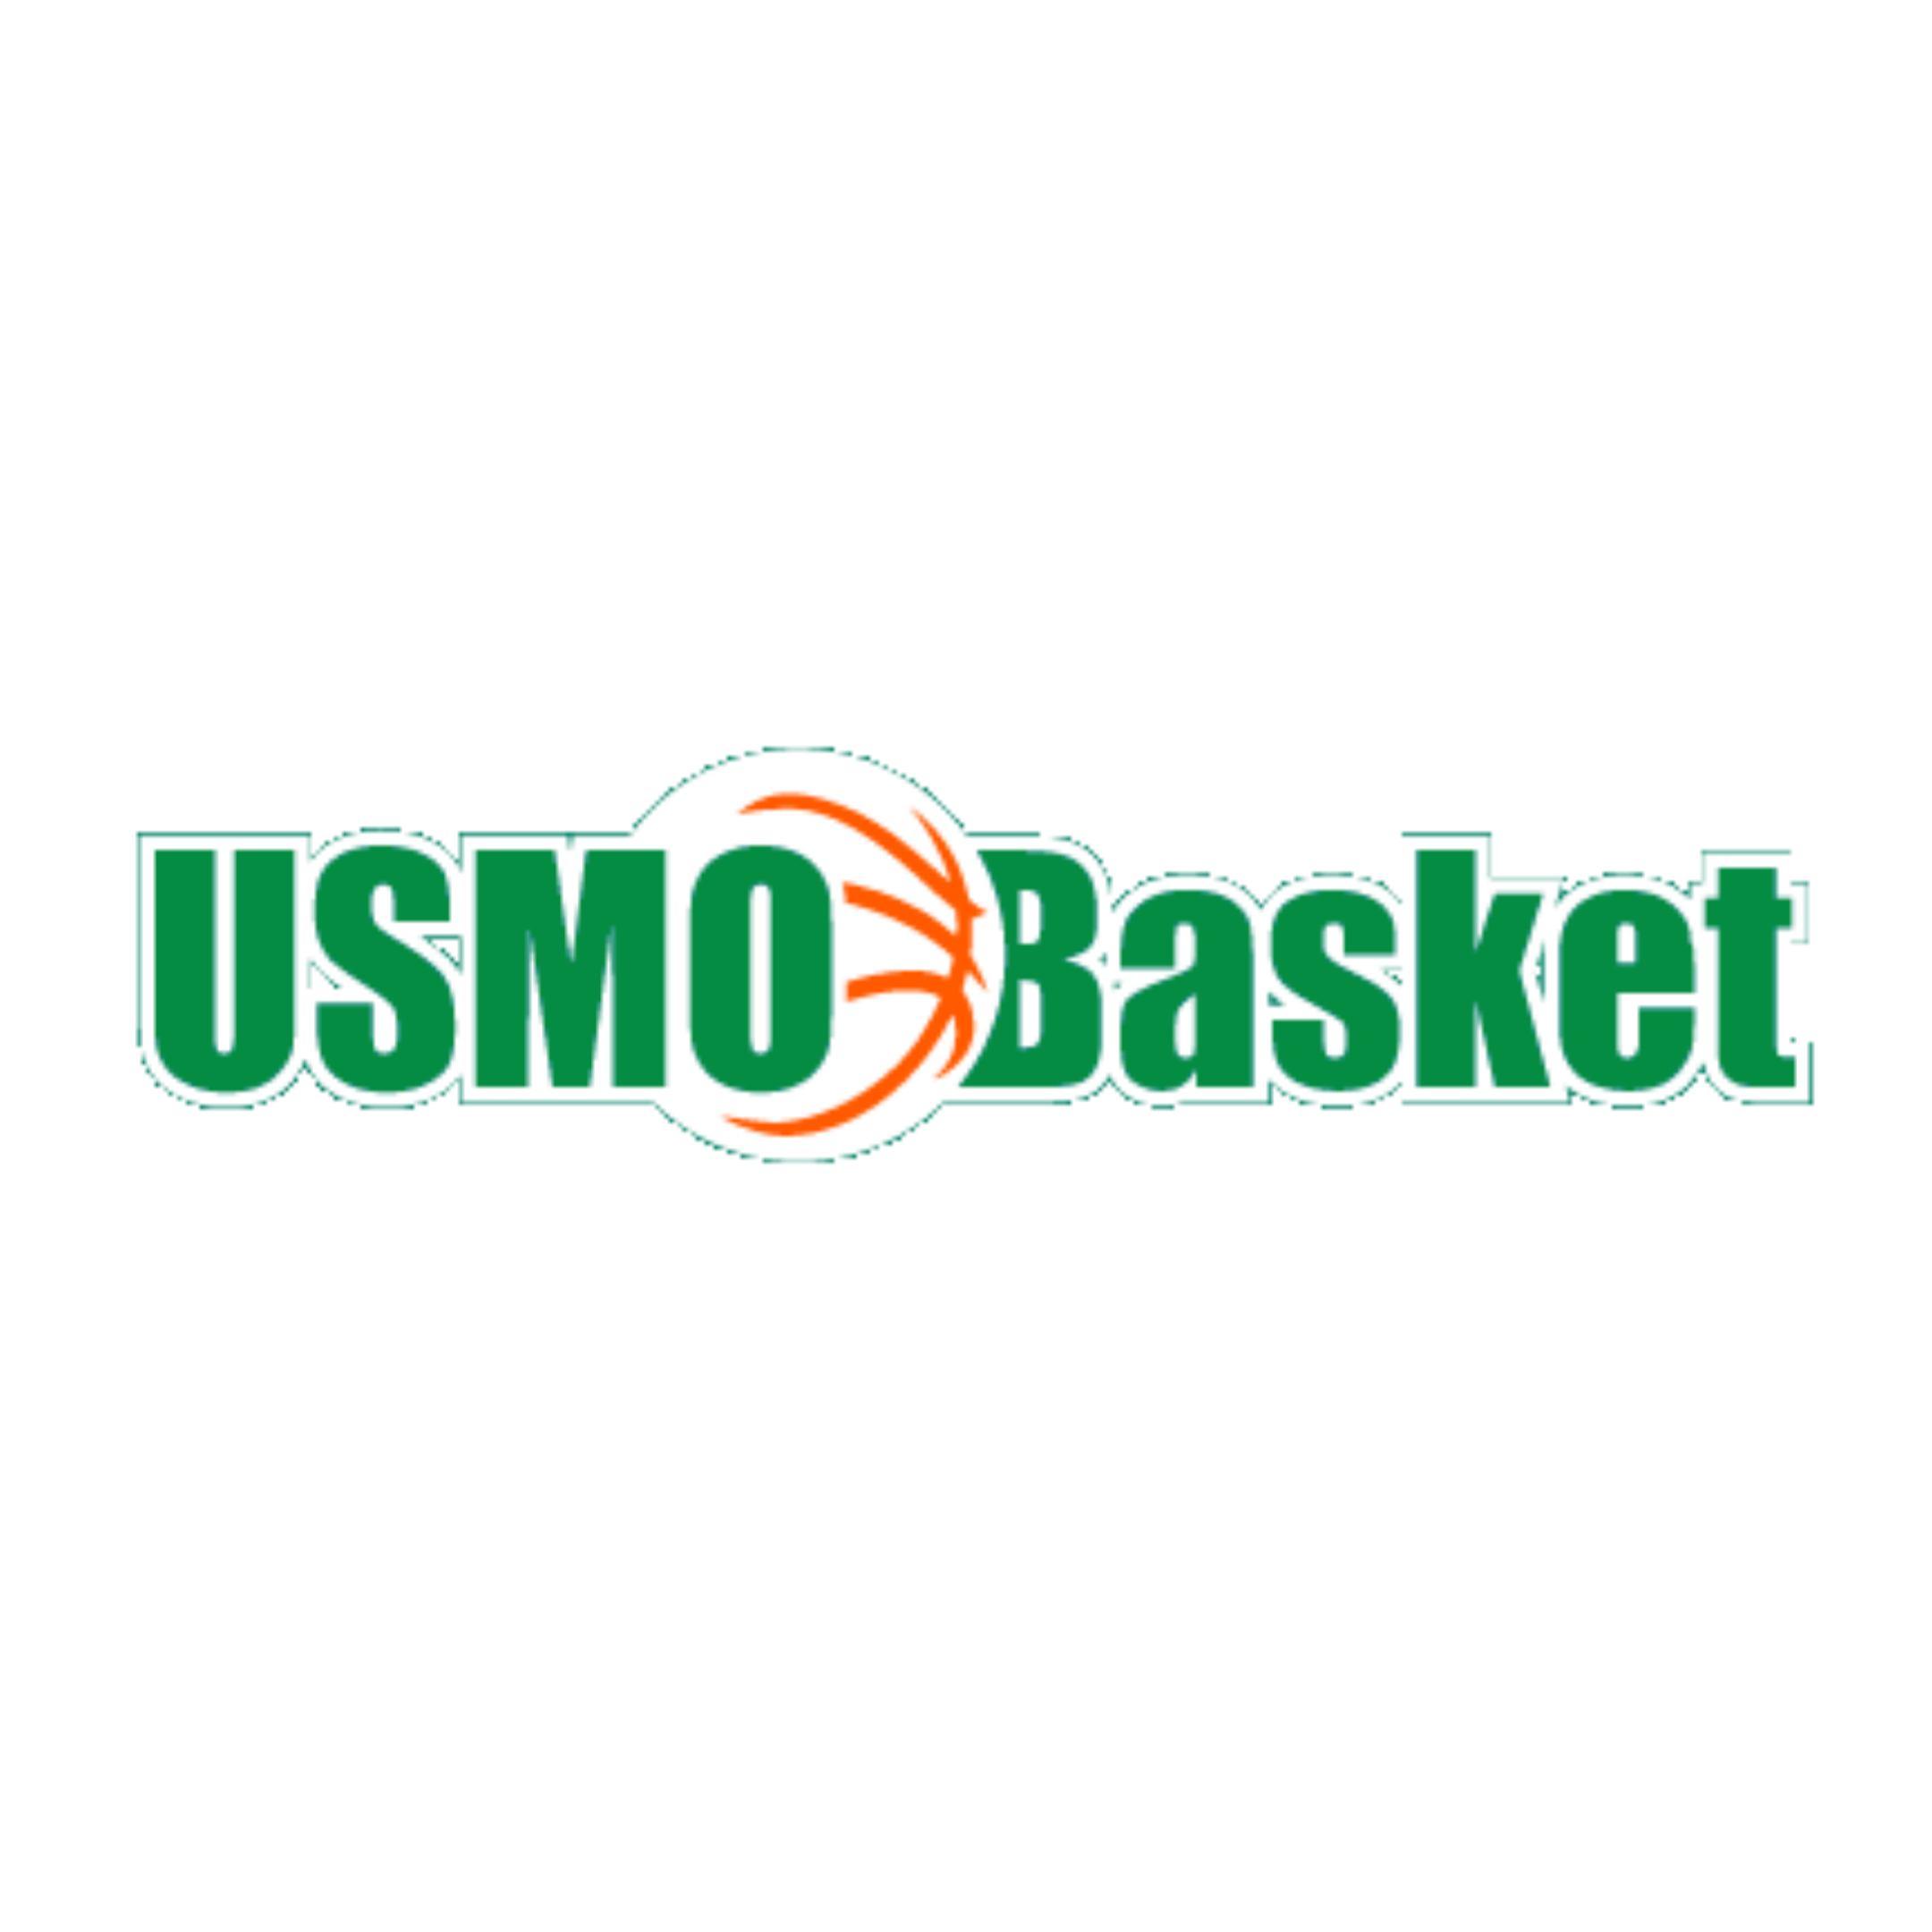 USM Olivet Basket - Com'ent